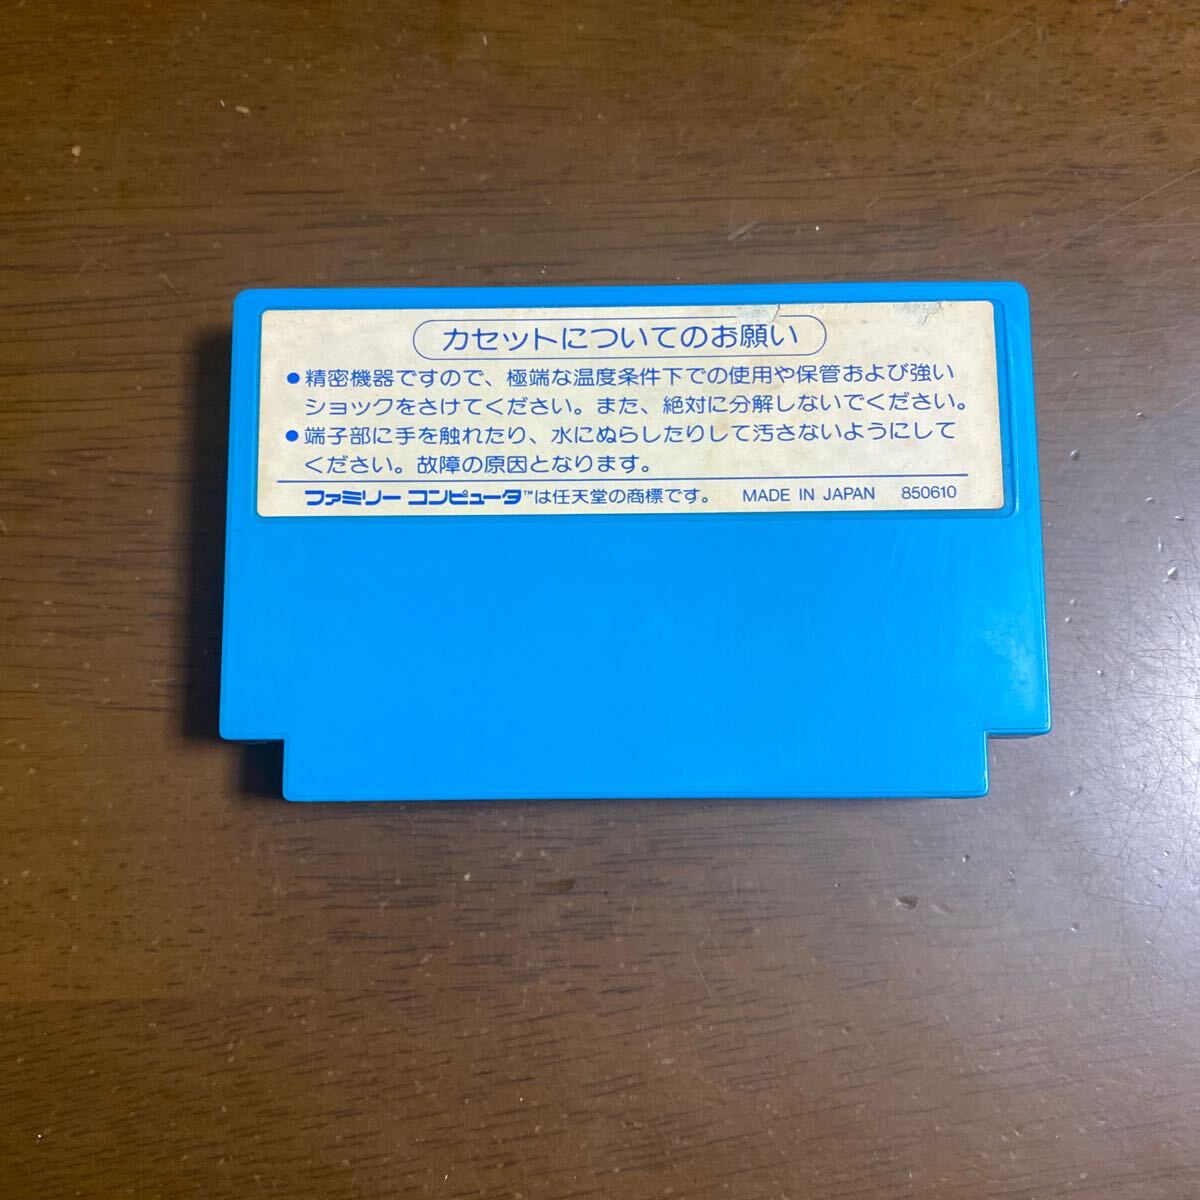  Famicom soft 1942